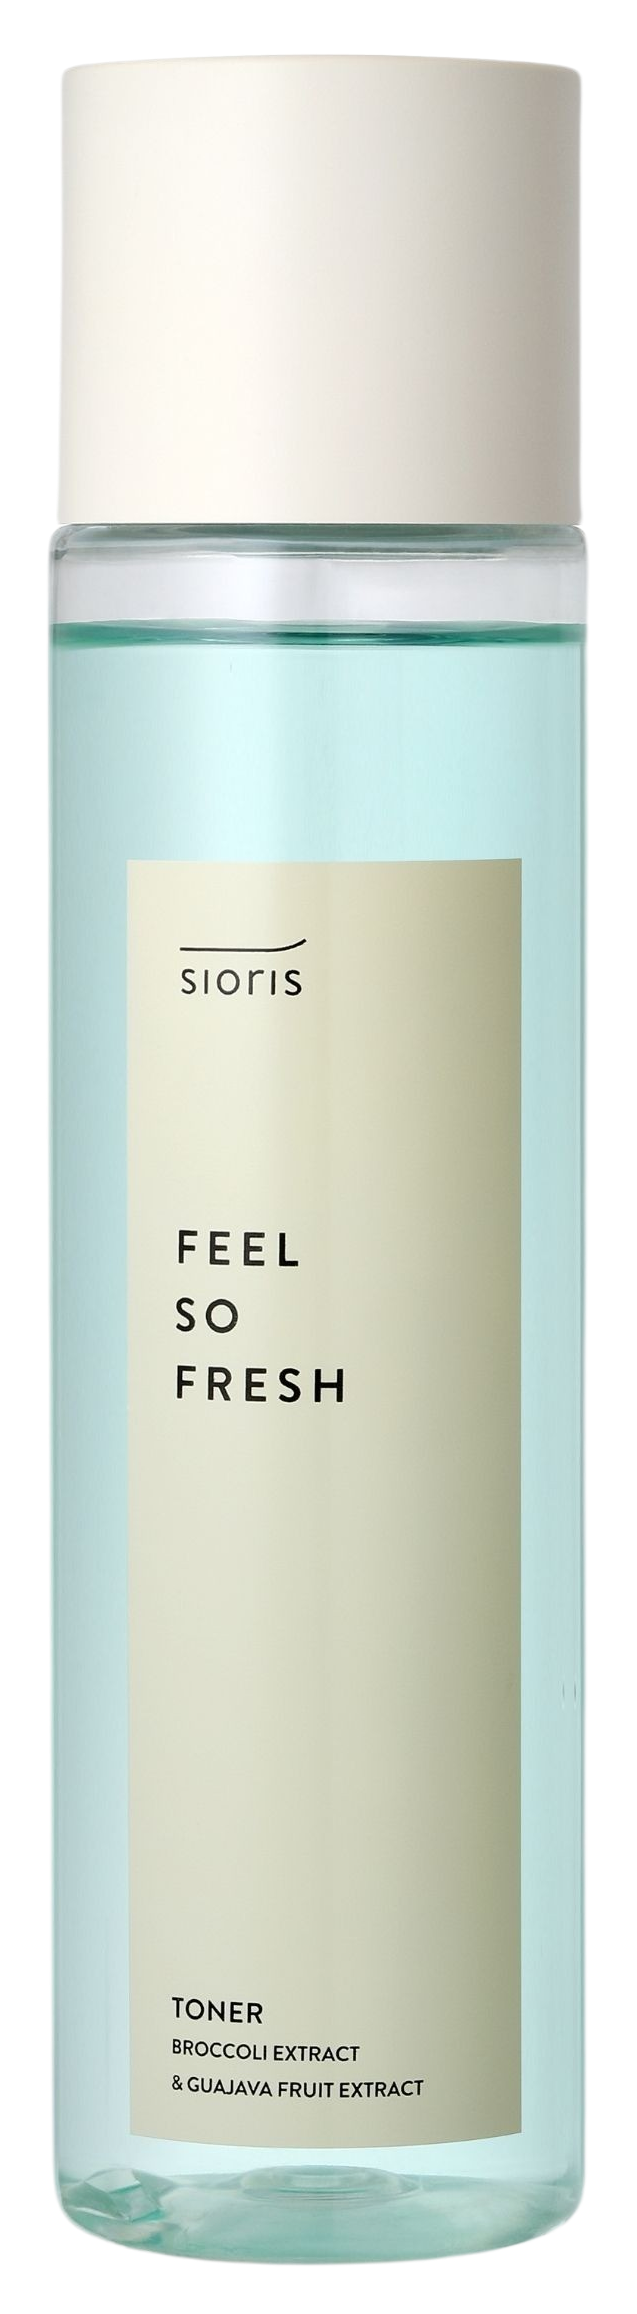 Sioris Feel So Fresh Toner, 150 ml